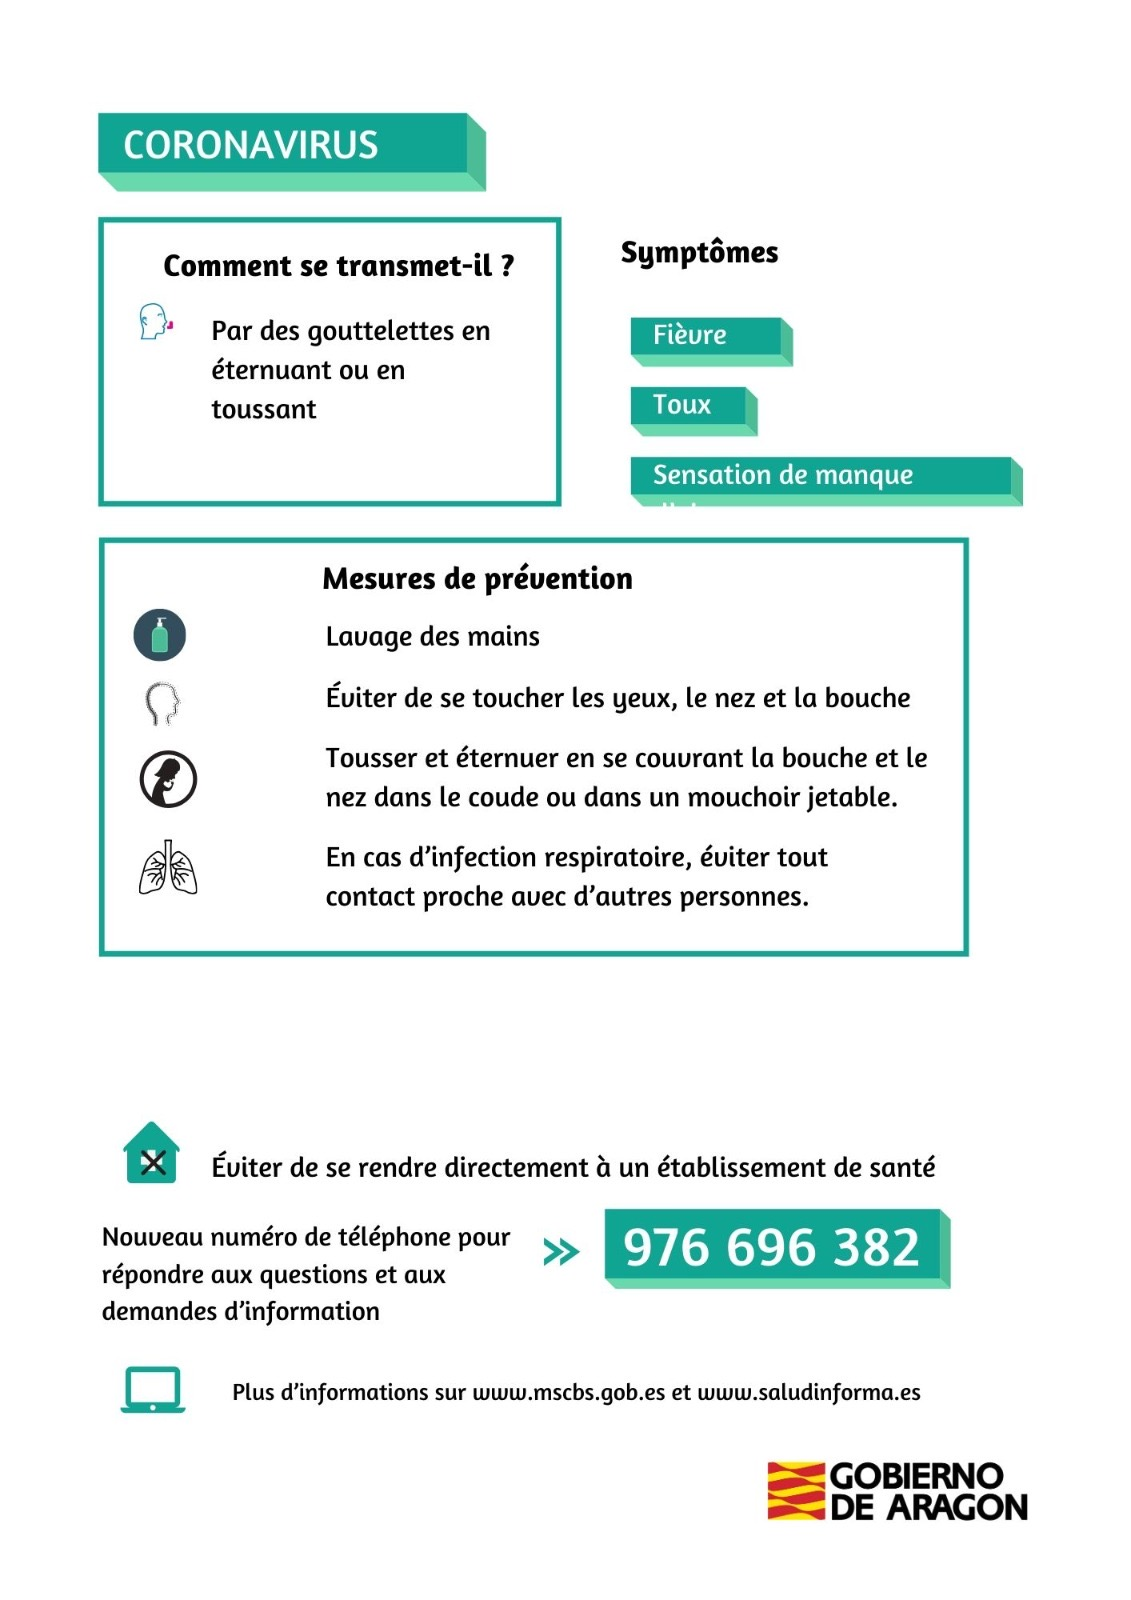 Información sobre el coronavirus en francés